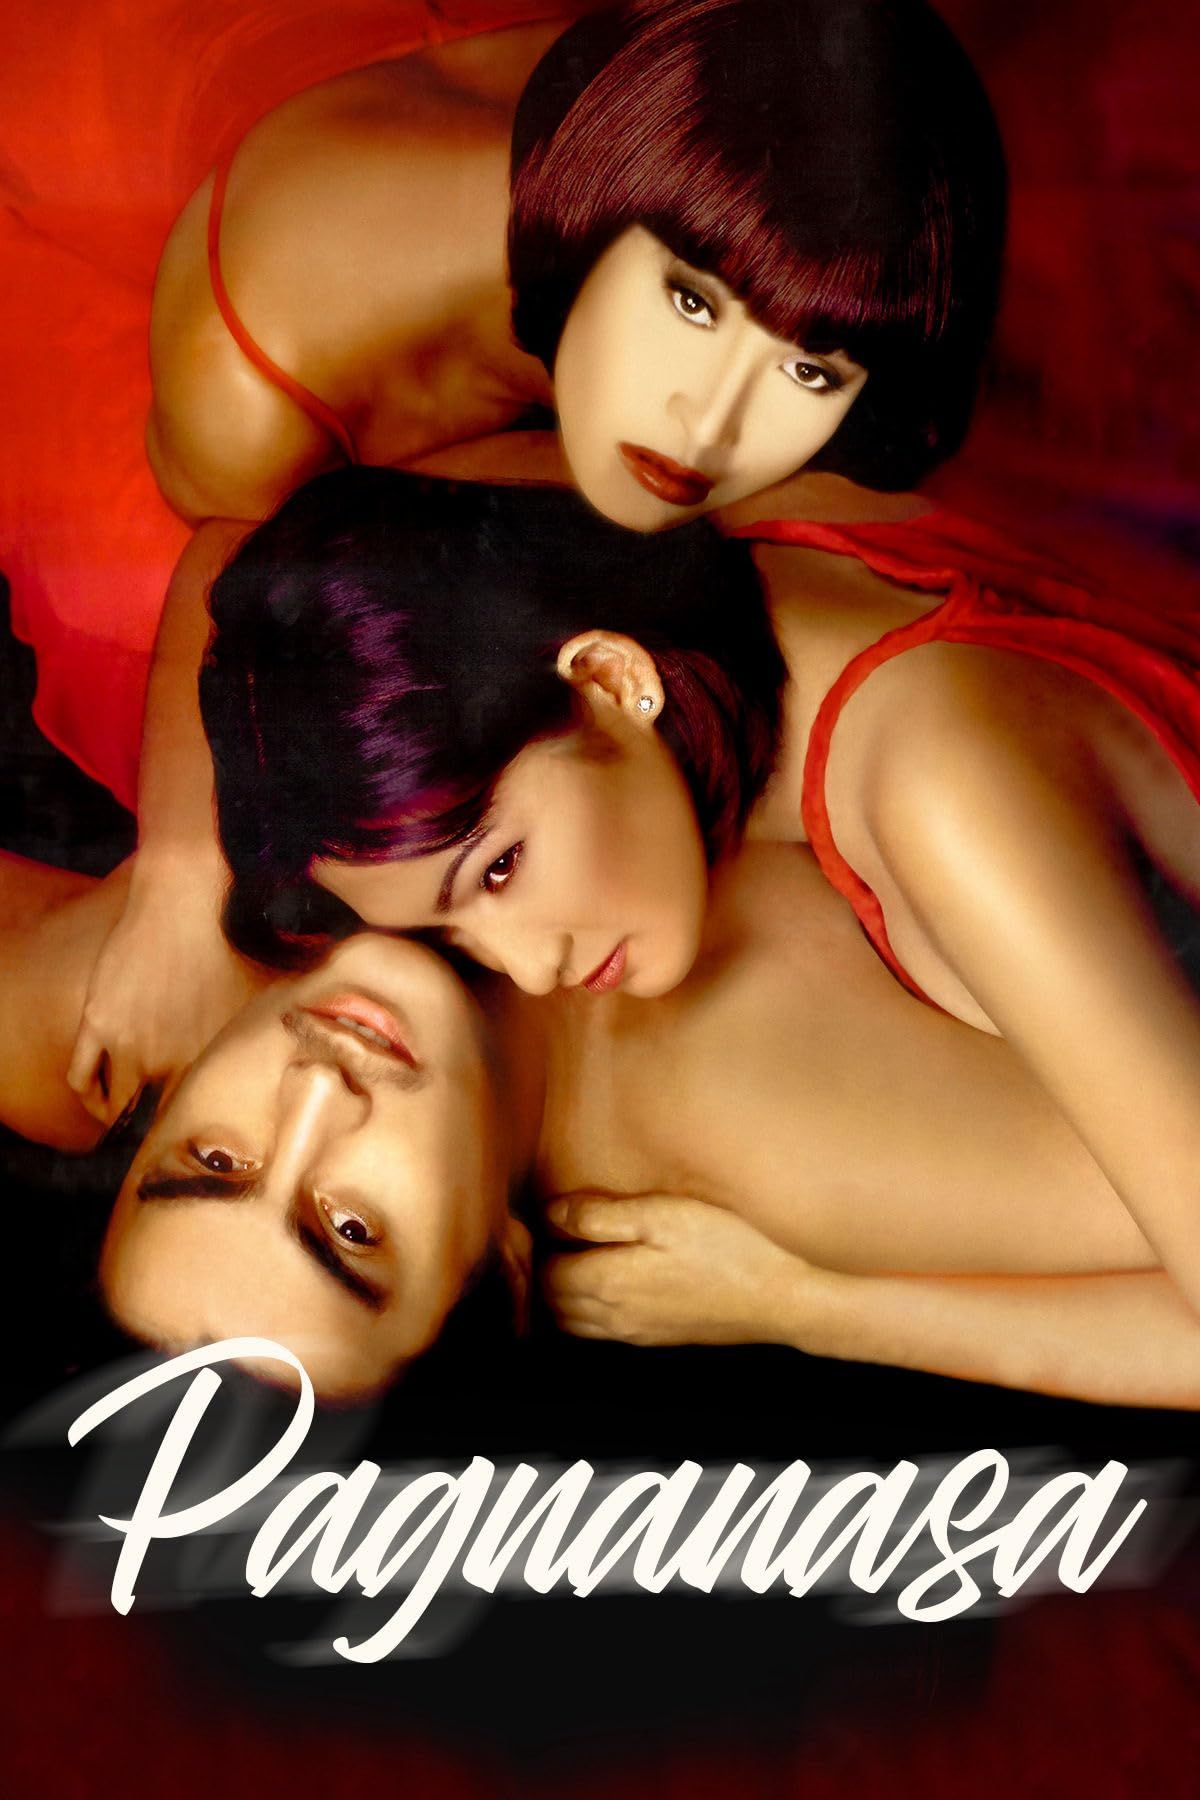 [18+] Pagnanasa (1998) Tagalog HDRip Full Movie 720p 480p